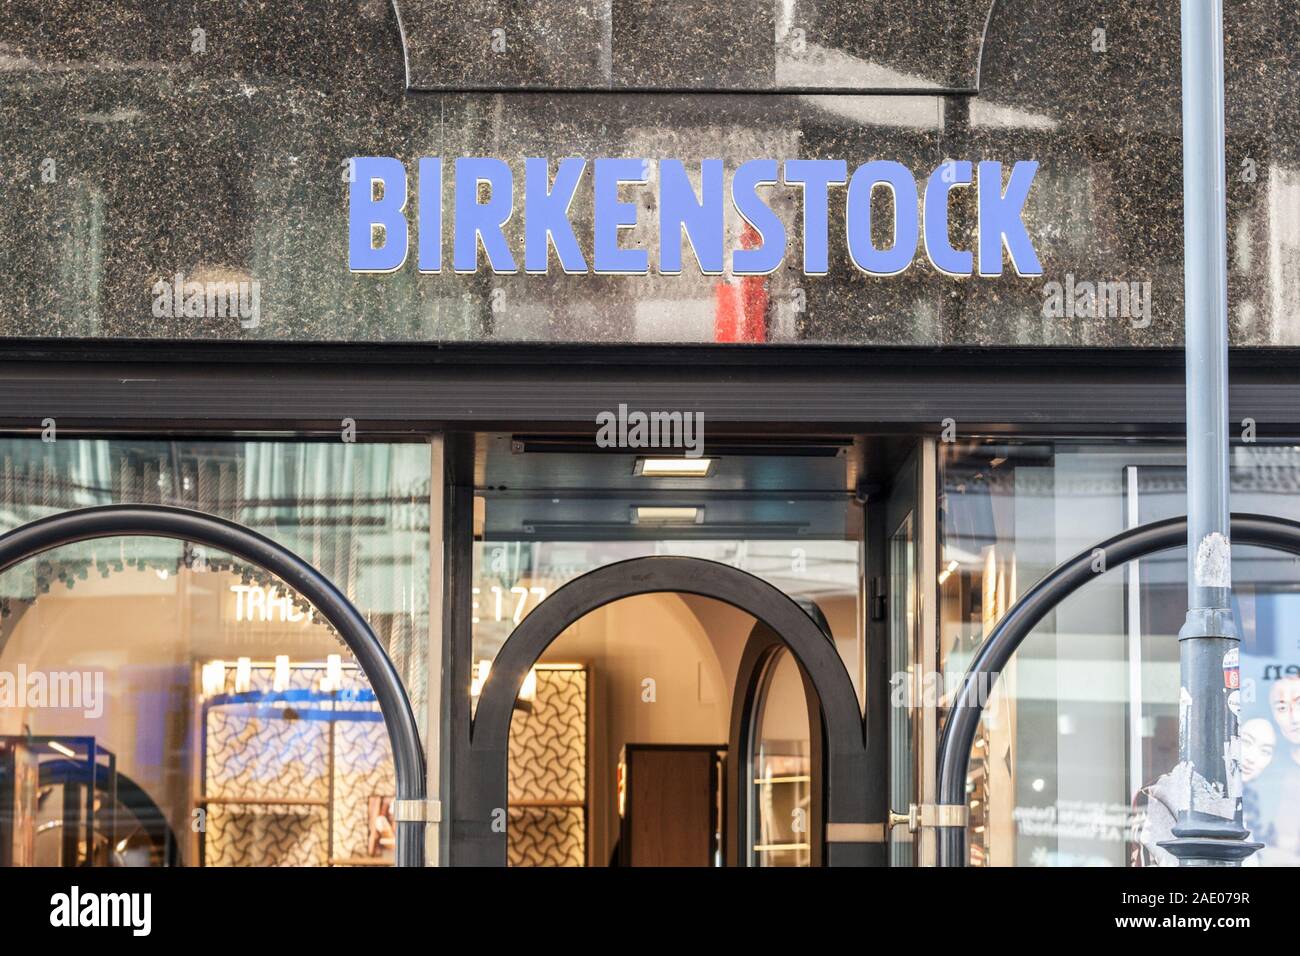 Wien, ÖSTERREICH - NOVEMBER 6, 2019: Birkenstock Logo auf einem Wien  Reseller Store auf Ihren lokalen Boutique. Birkenstock ist ein Schuh  Hersteller famo Stockfotografie - Alamy